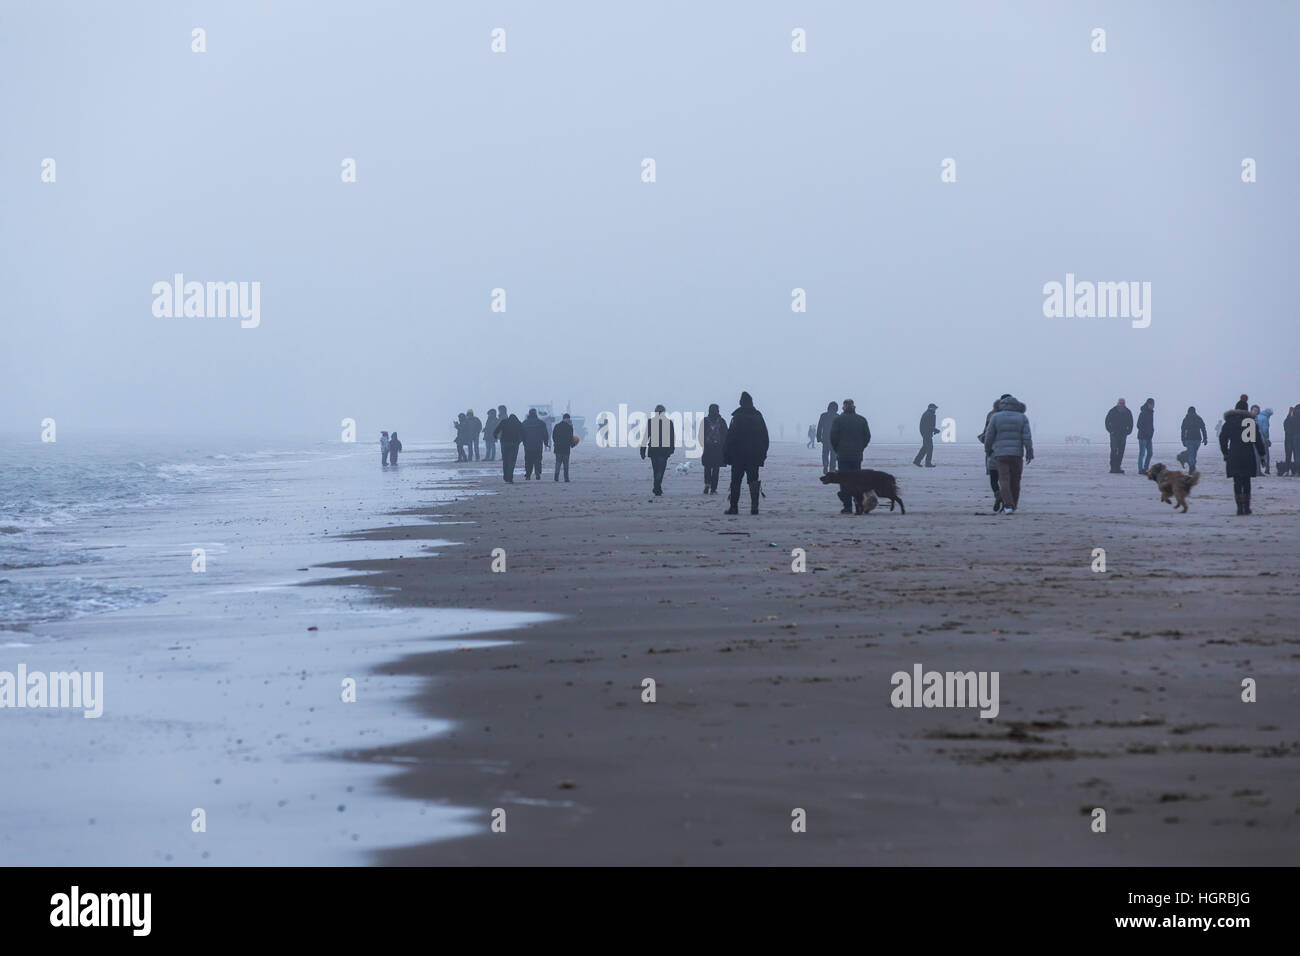 Spaziergänger am Strand in der Nähe von Bergen Aan Zee, Noord-Holland, Winter, Nebel, spazieren gehen Stockfoto